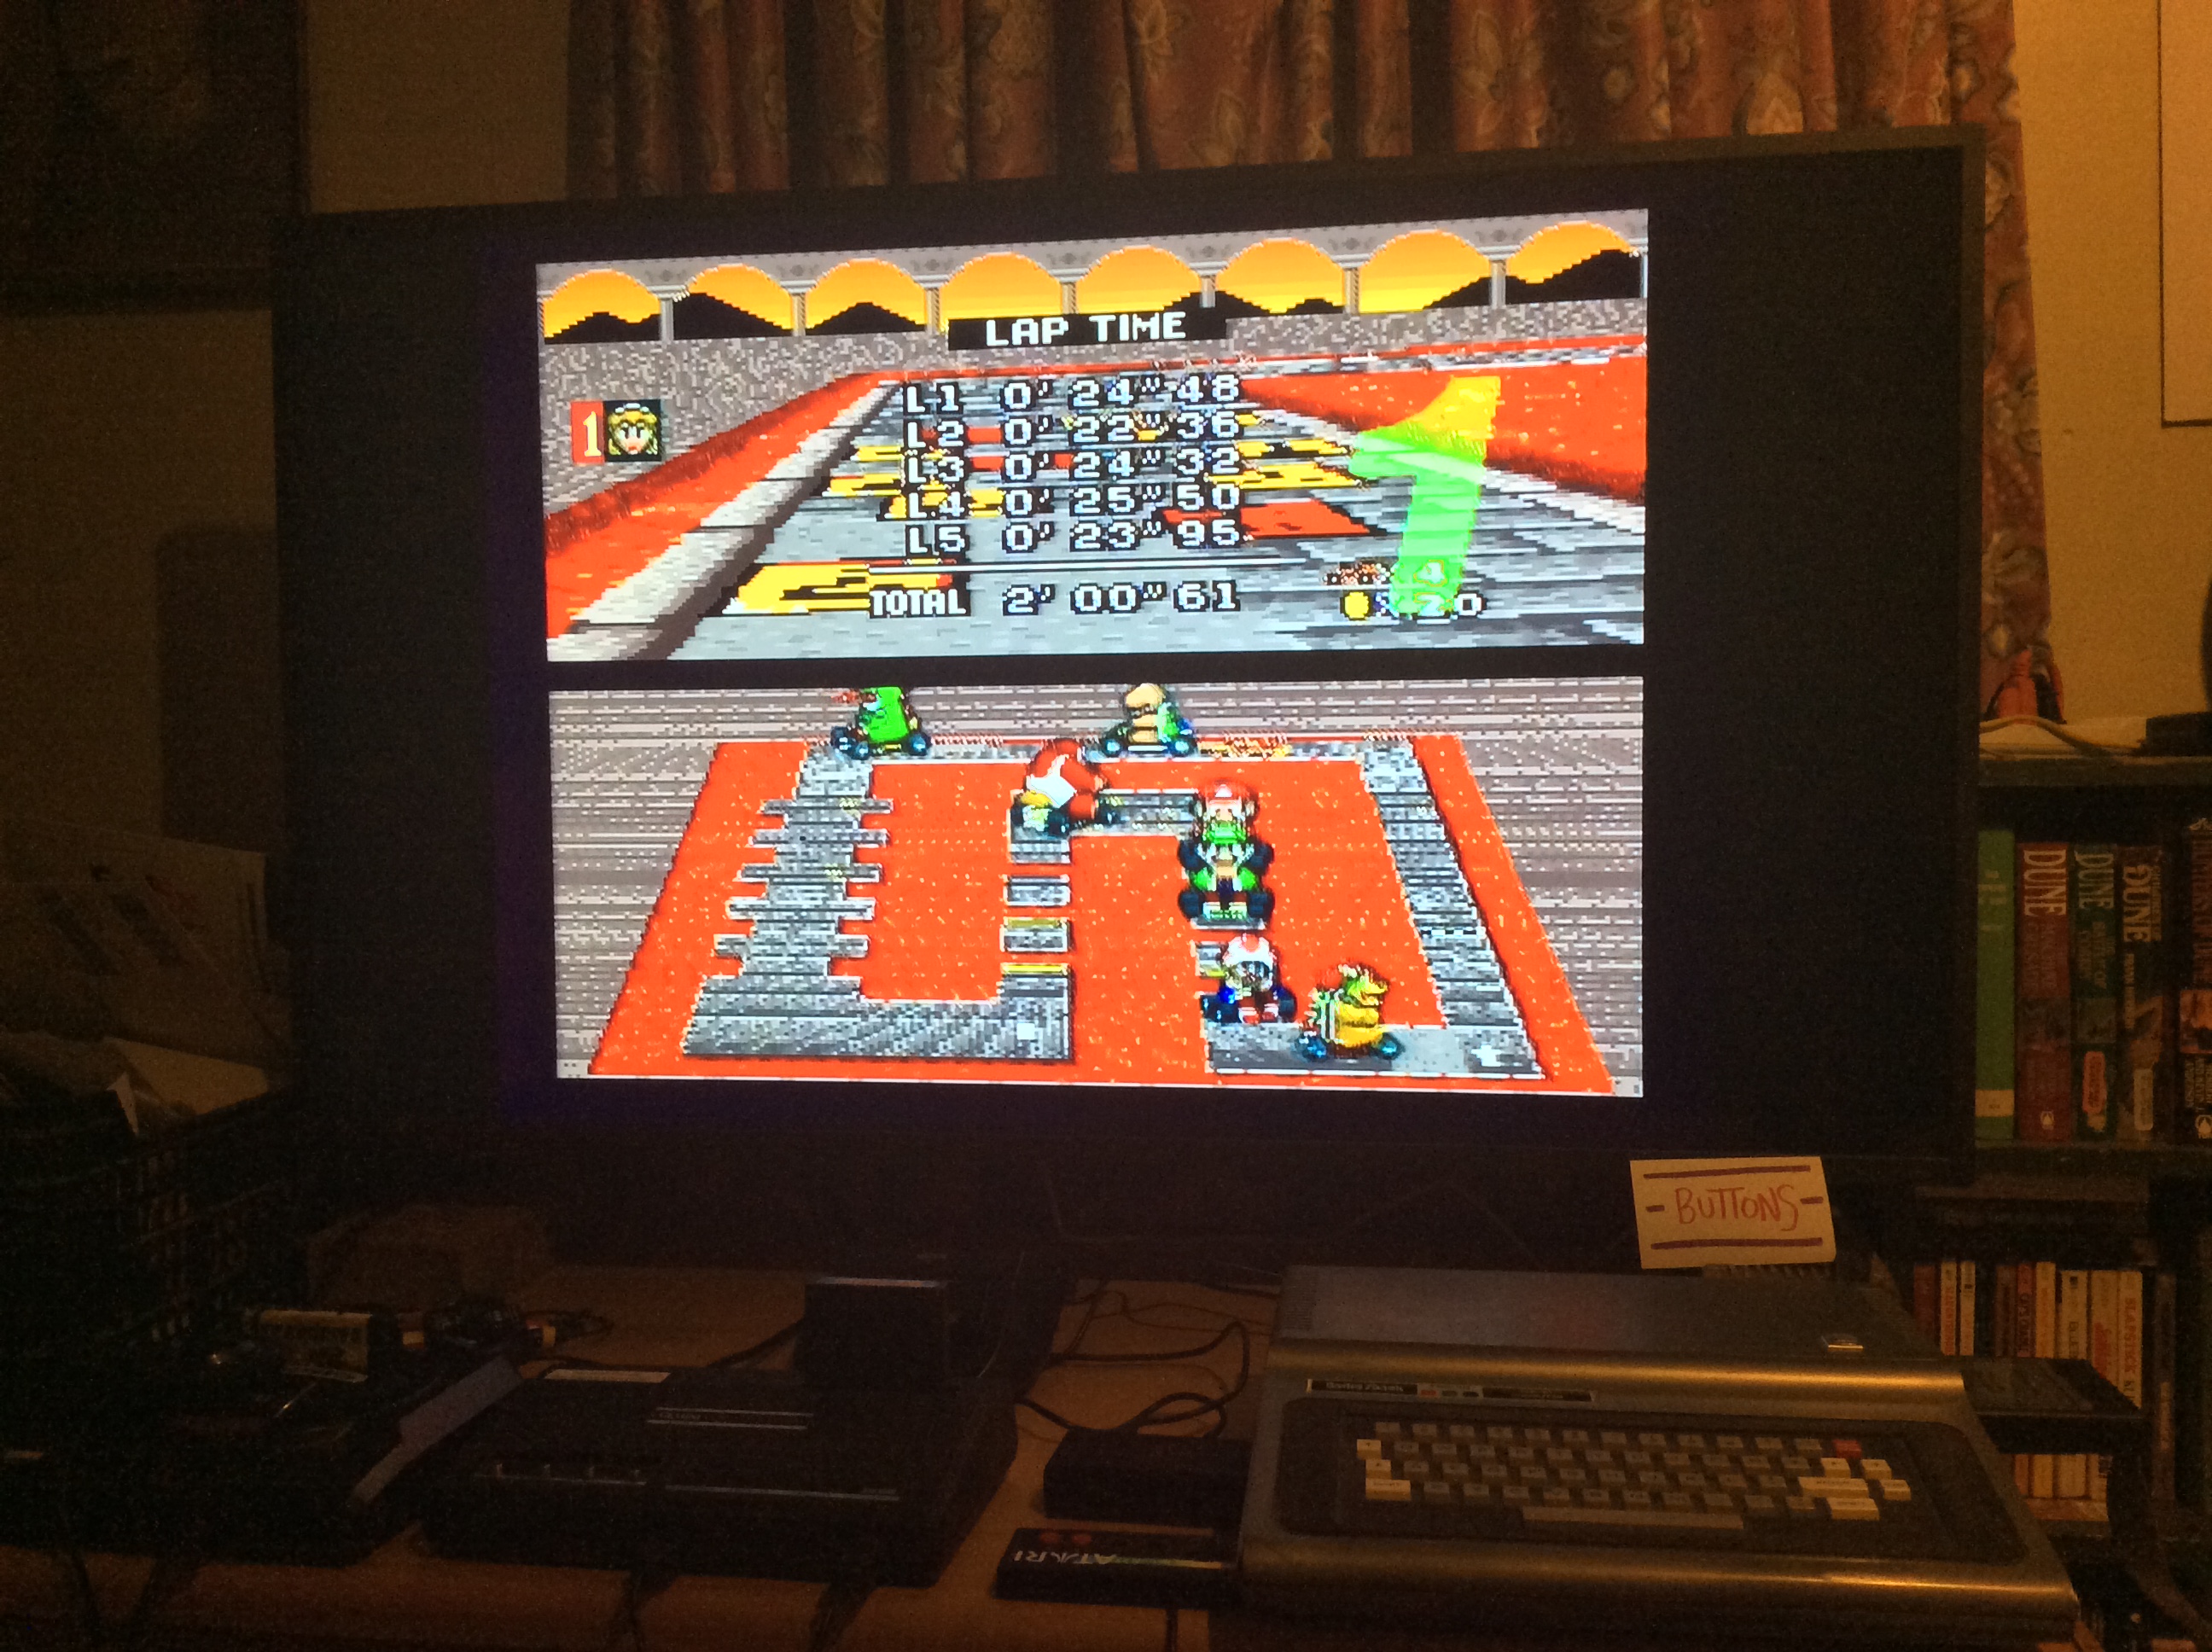 Super Mario Kart: Bowser Castle 1 [50cc] [Lap Time] time of 0:00:22.36